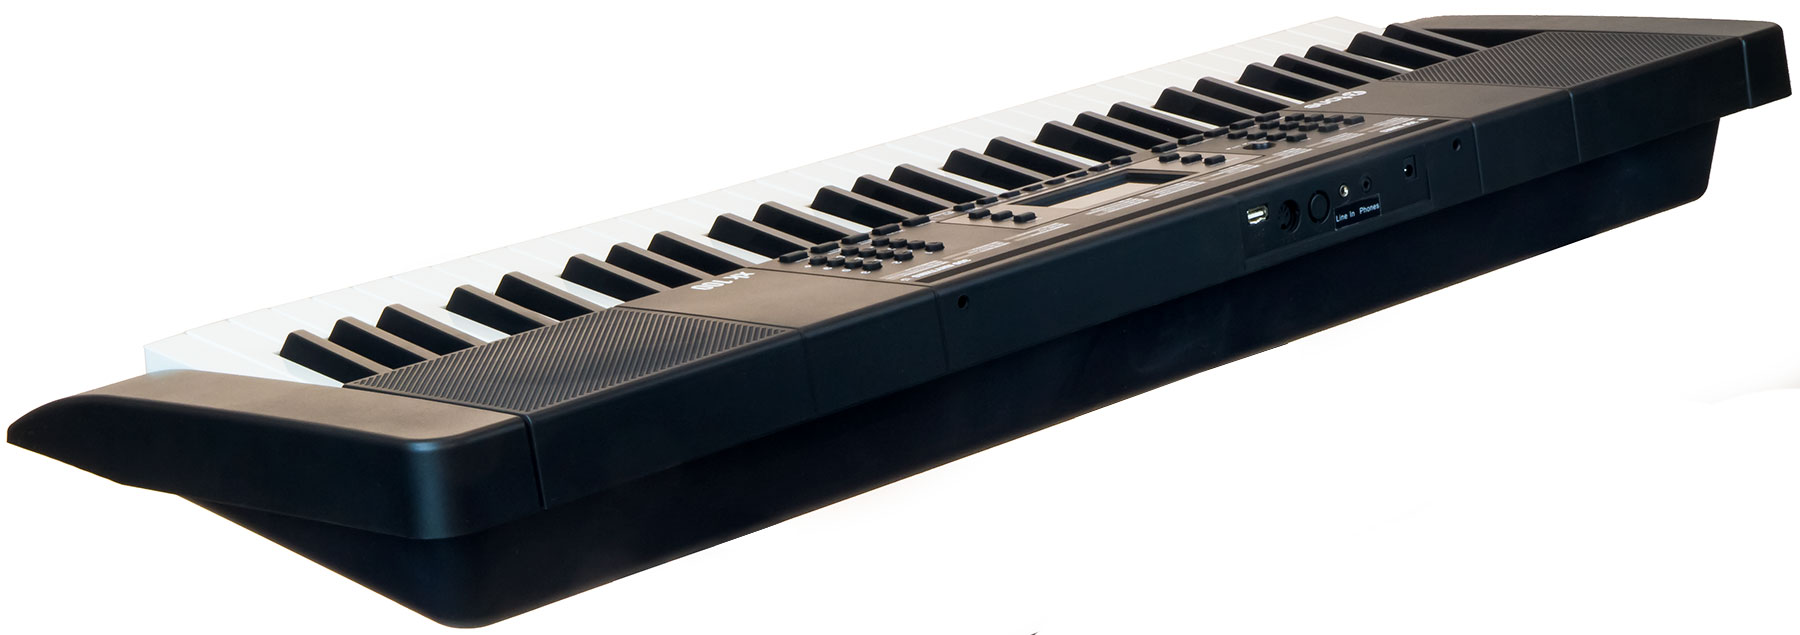 X-tone Xk100 Clavier Arrangeur - Clavier Arrangeur - Variation 2